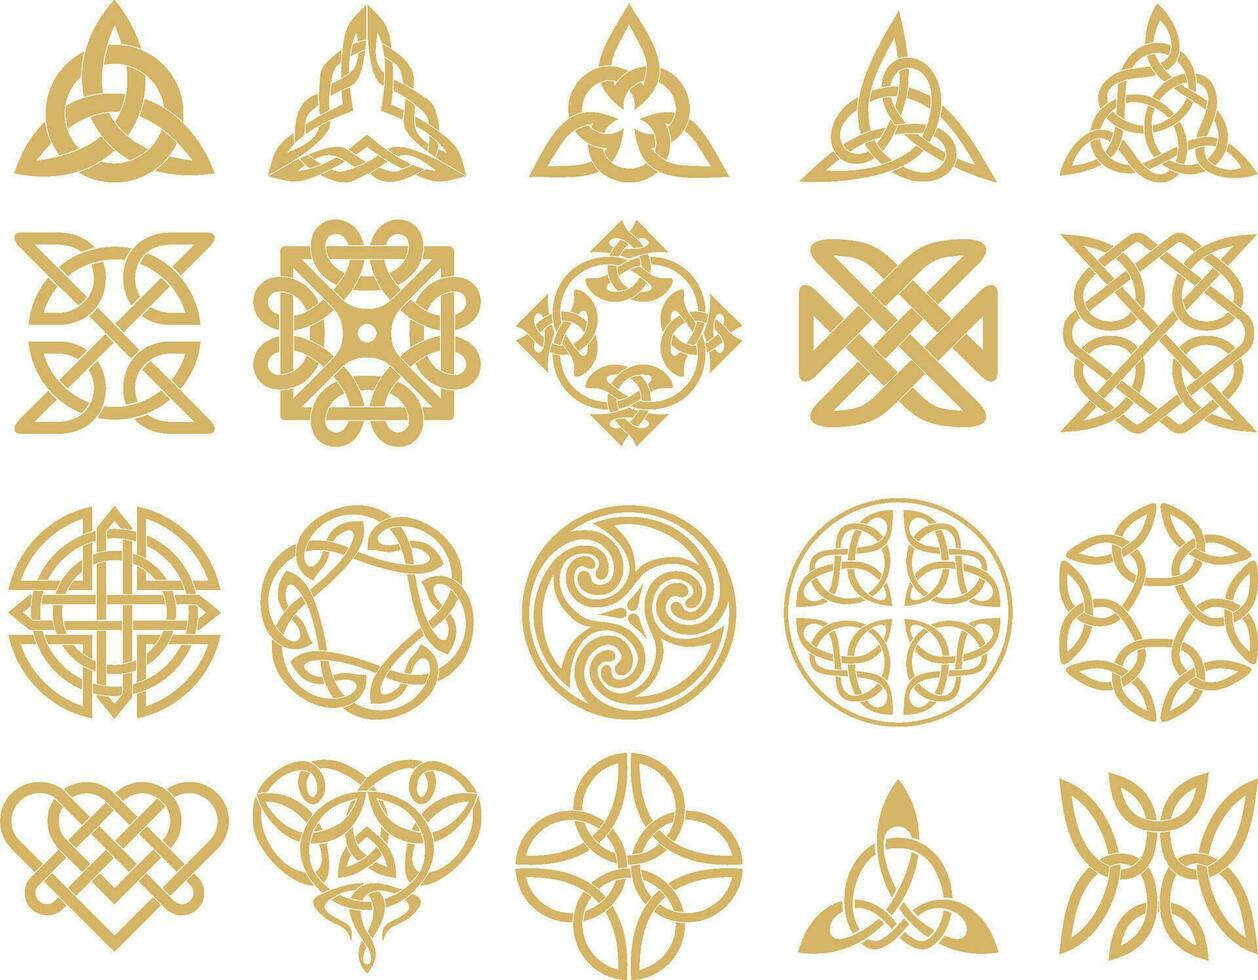 vector reeks van gouden keltisch knopen. ornament van oude Europese volkeren. de teken en symbool van de Iers, Schotten, Britten, frank.